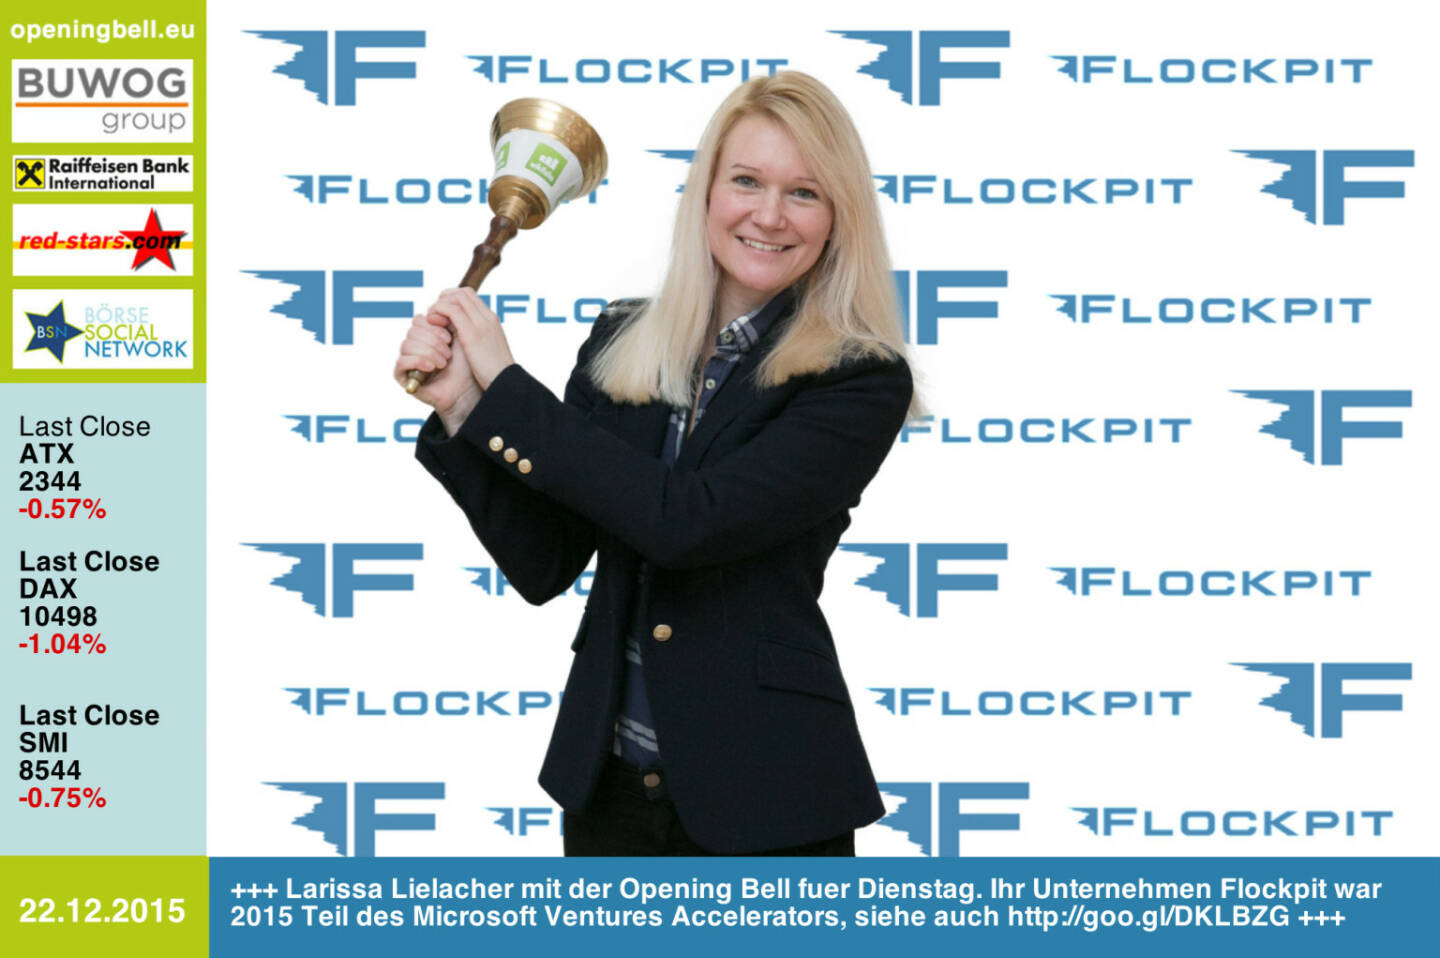 #openingbell am 22.12.: Larissa Lielacher mit der Opening Bell fuer Dienstag. Ihr Unternehmen Flockpit war 2015 Teil des Microsoft Ventures Accelerators, siehe auch http://goo.gl/DKLBZG http://www.flockpit.com http://www.openingbell.eu